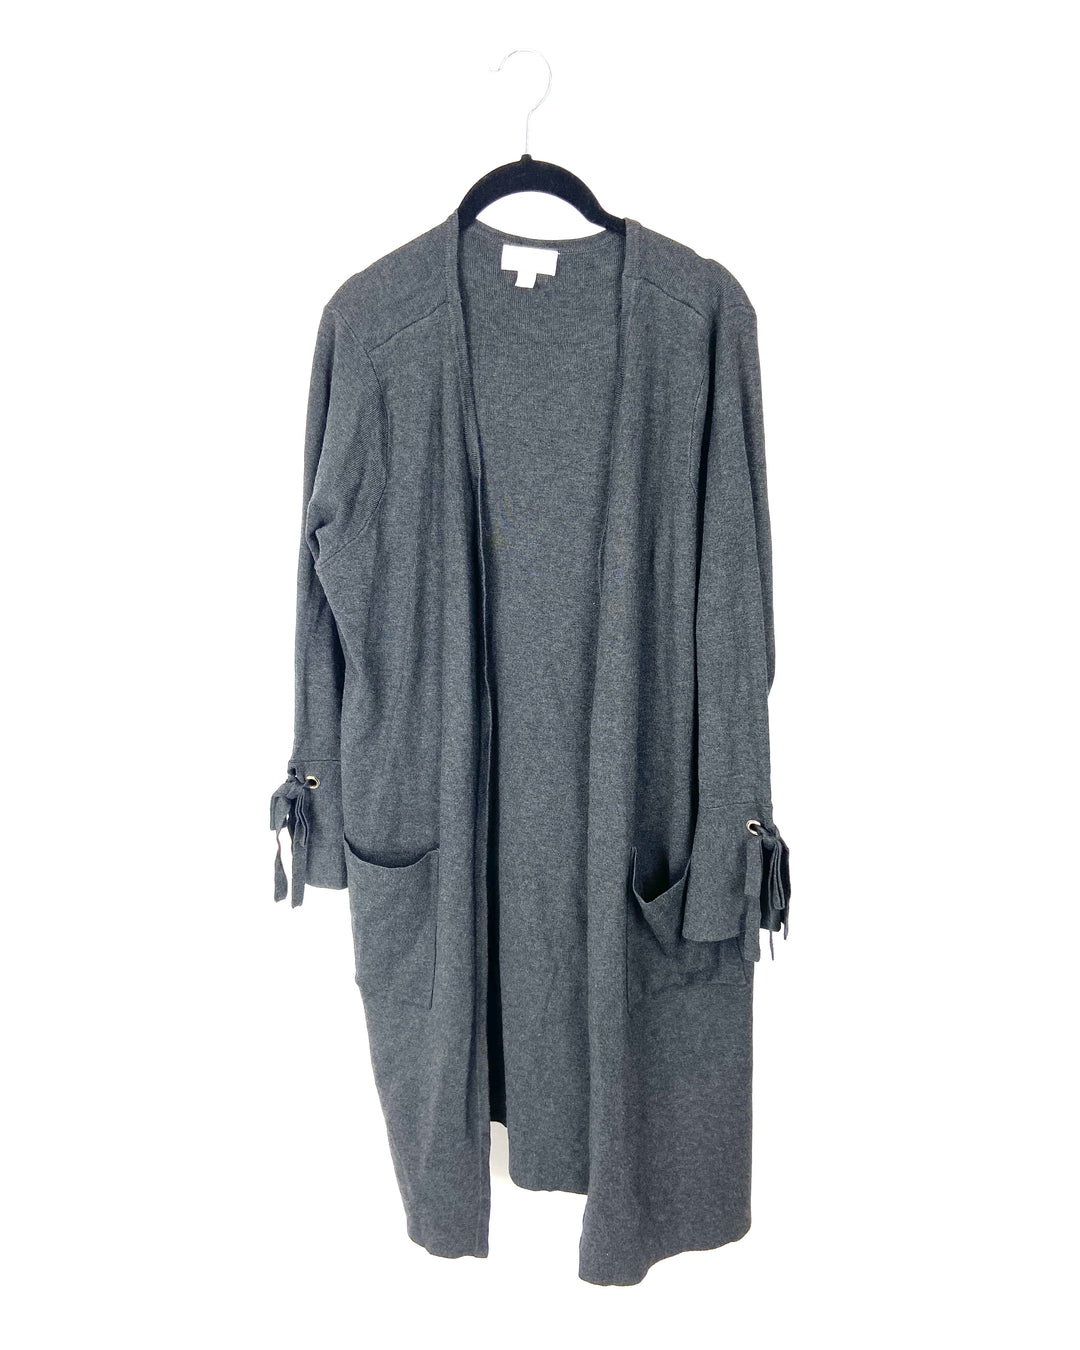 Grey Cardigan - Medium/Large